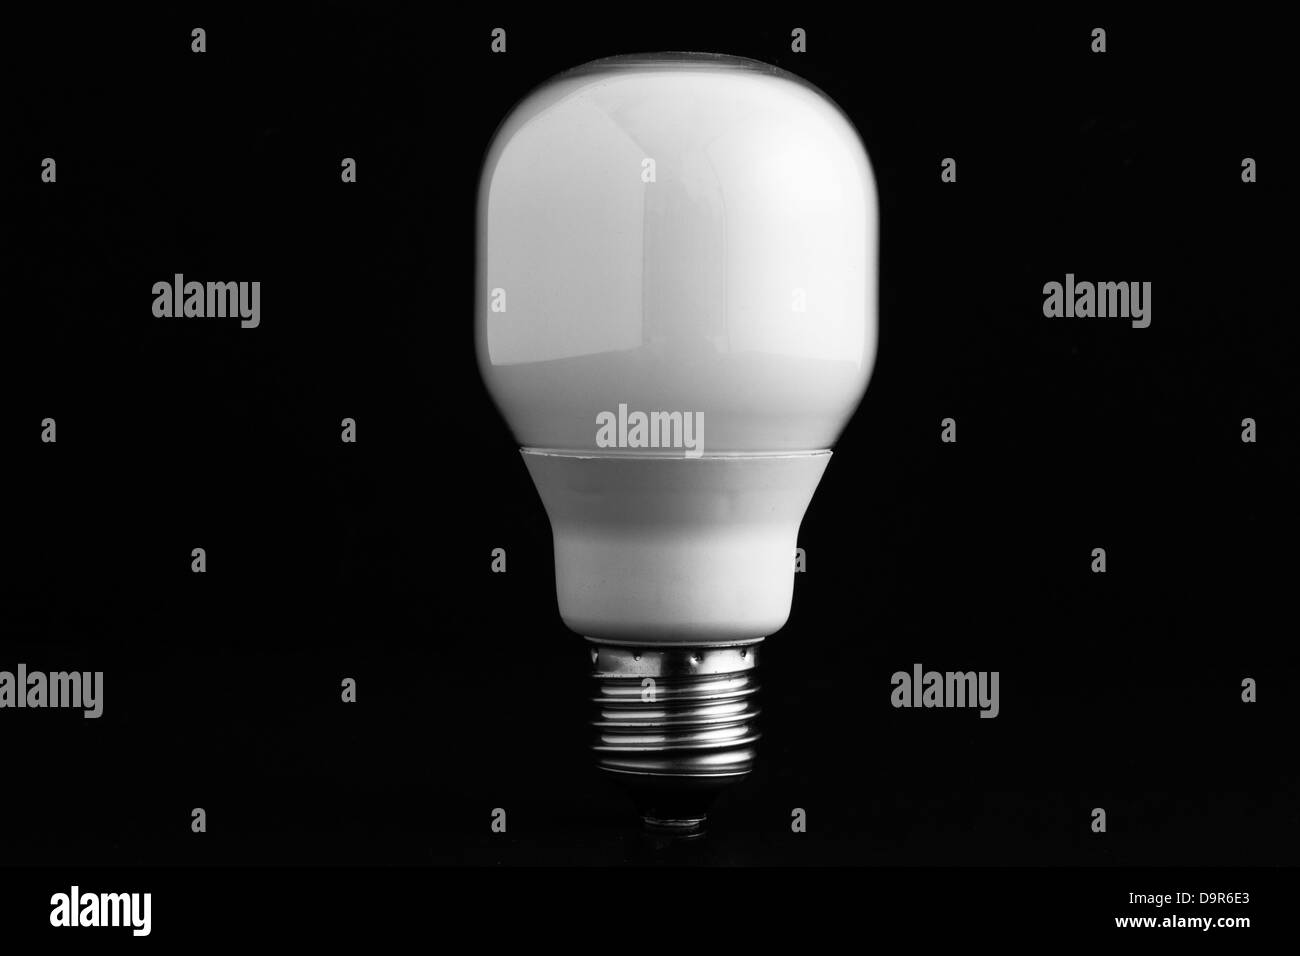 Energy saving bulb on black background Stock Photo